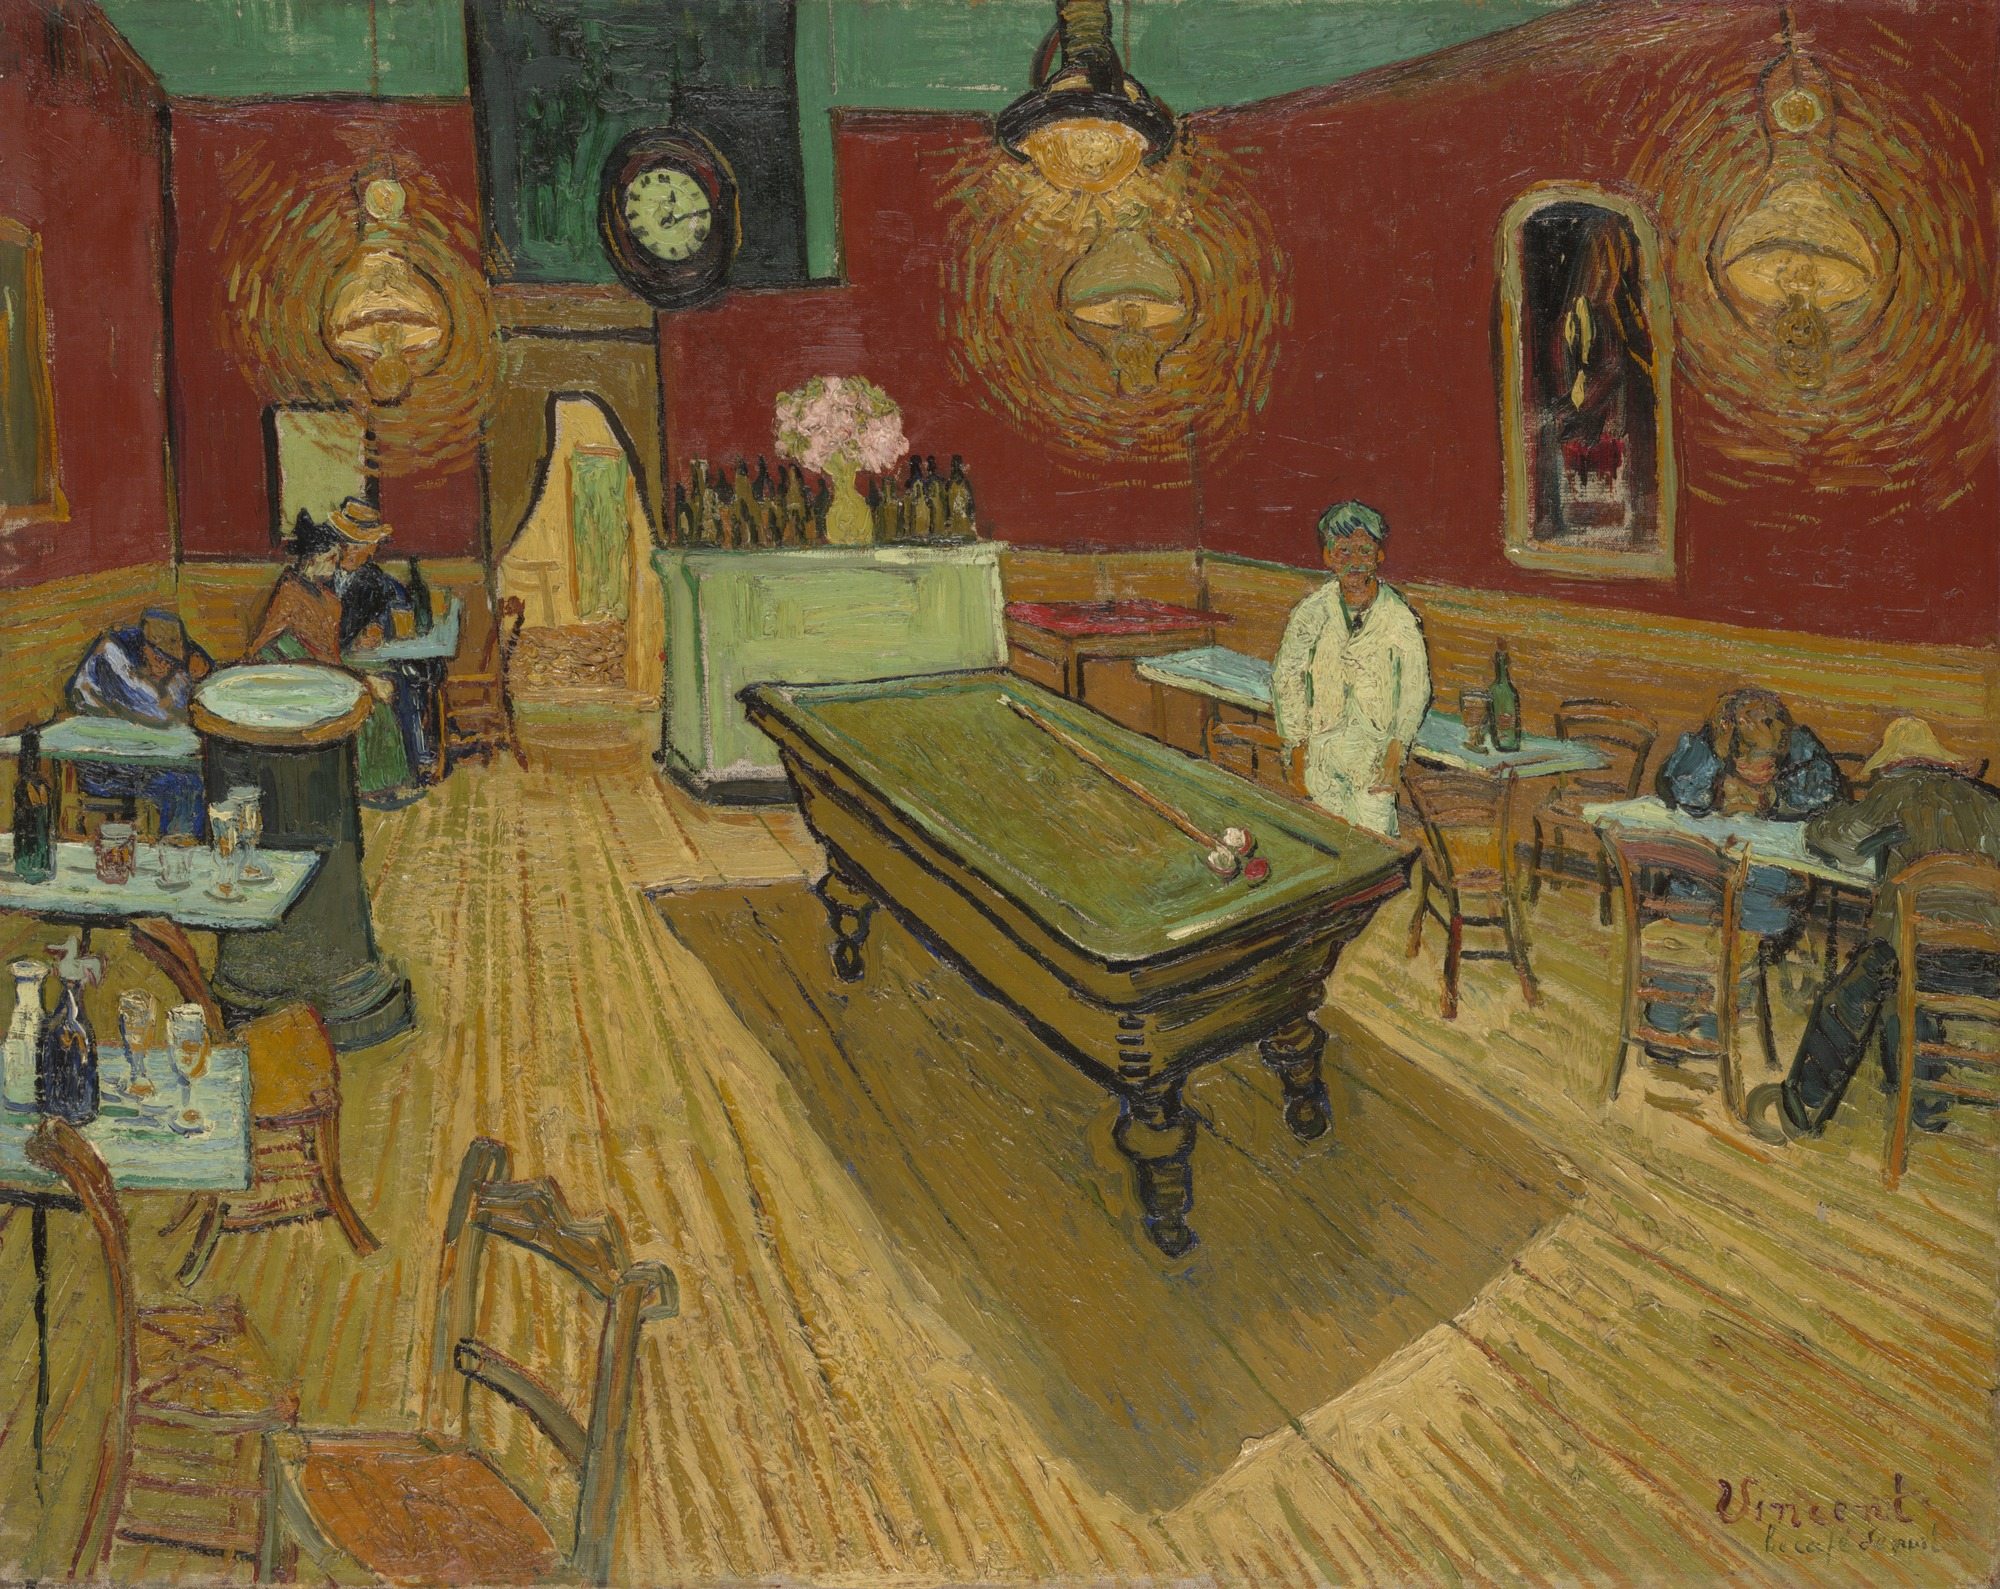 Le_café_de_nuit_(The_Night_Café)_by_Vincent_van_Gogh.jpeg